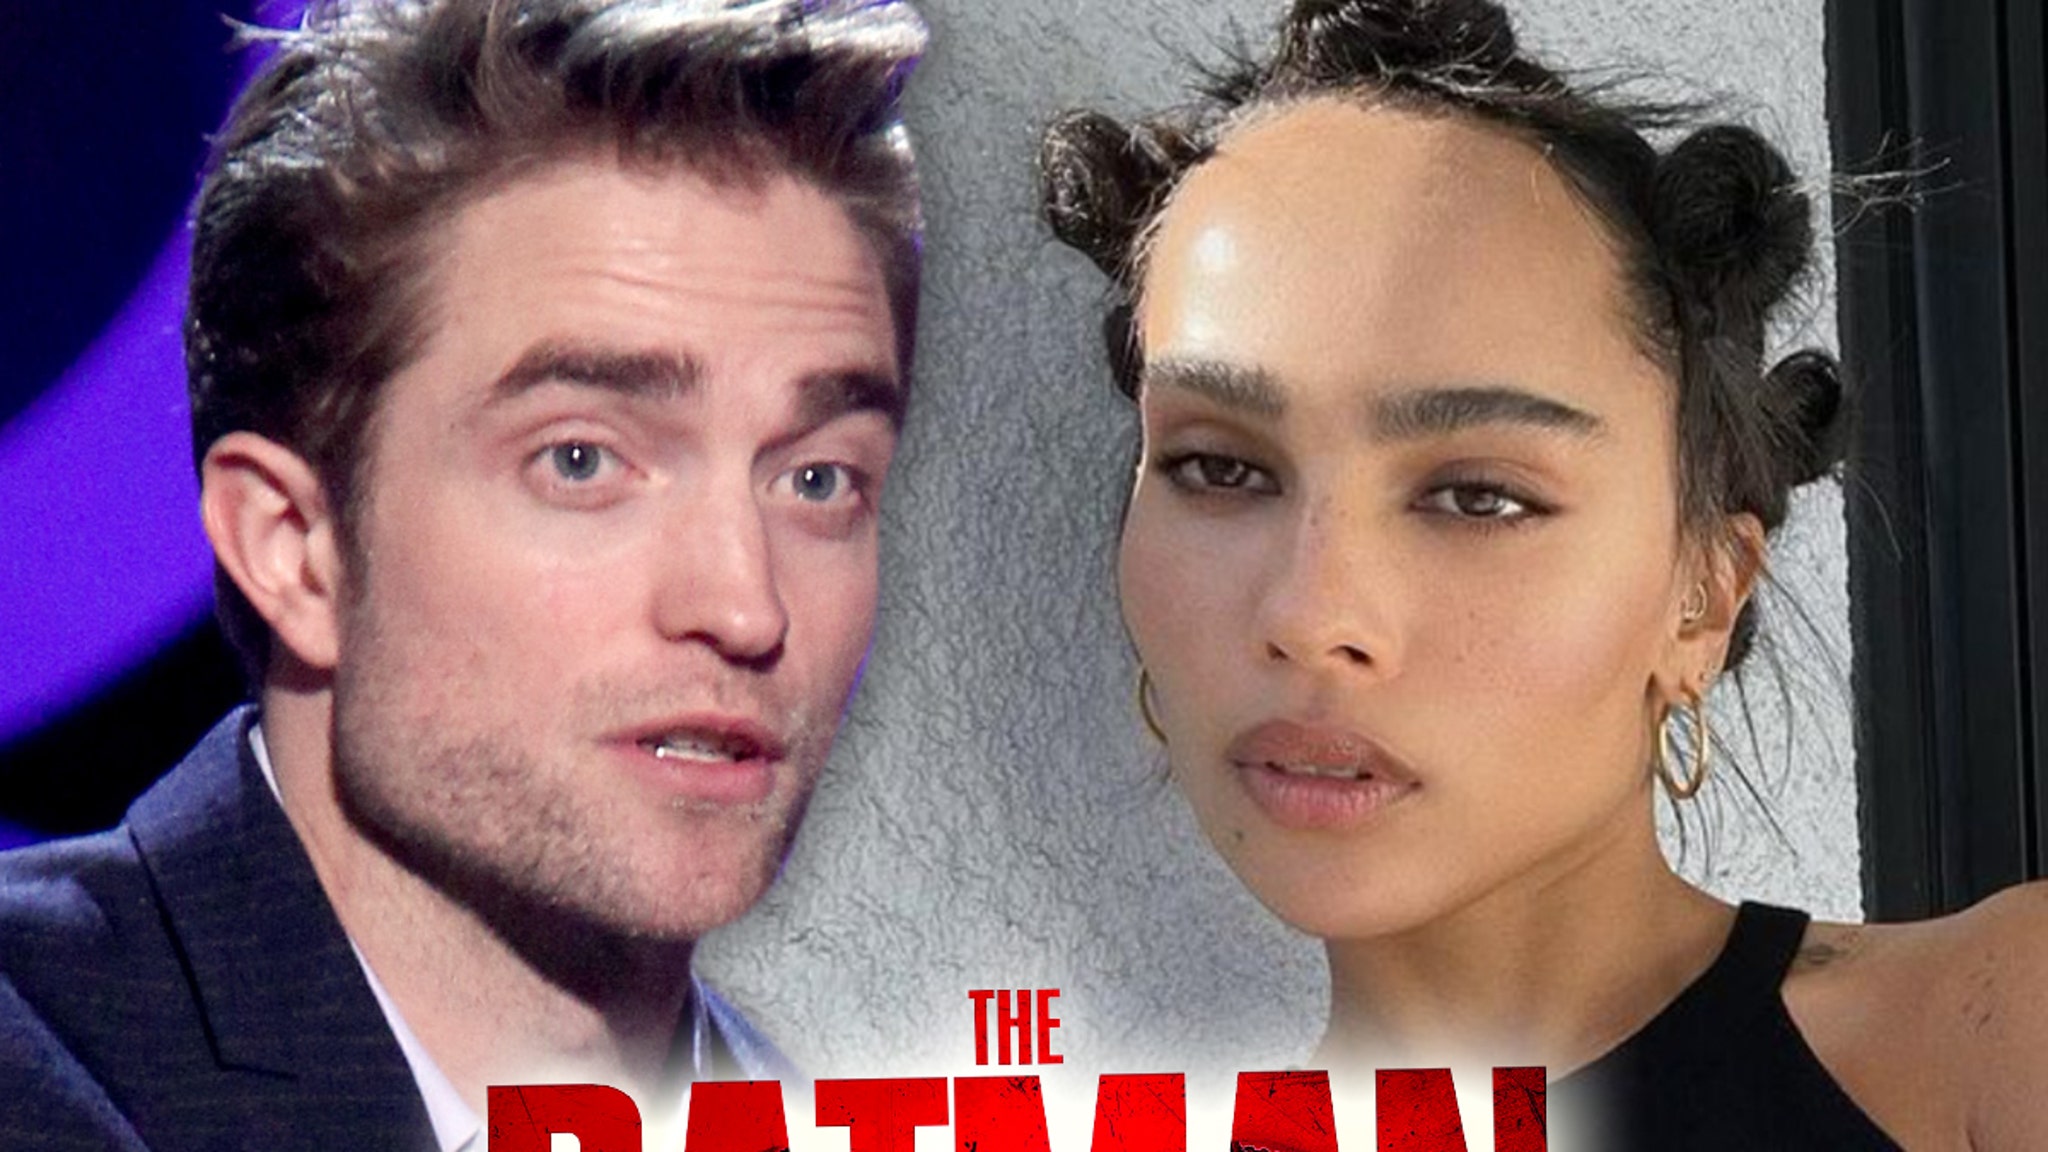 Pattinson’s nieuwe ‘Batman’-film beschreven door critici als zeer wakker, politiek